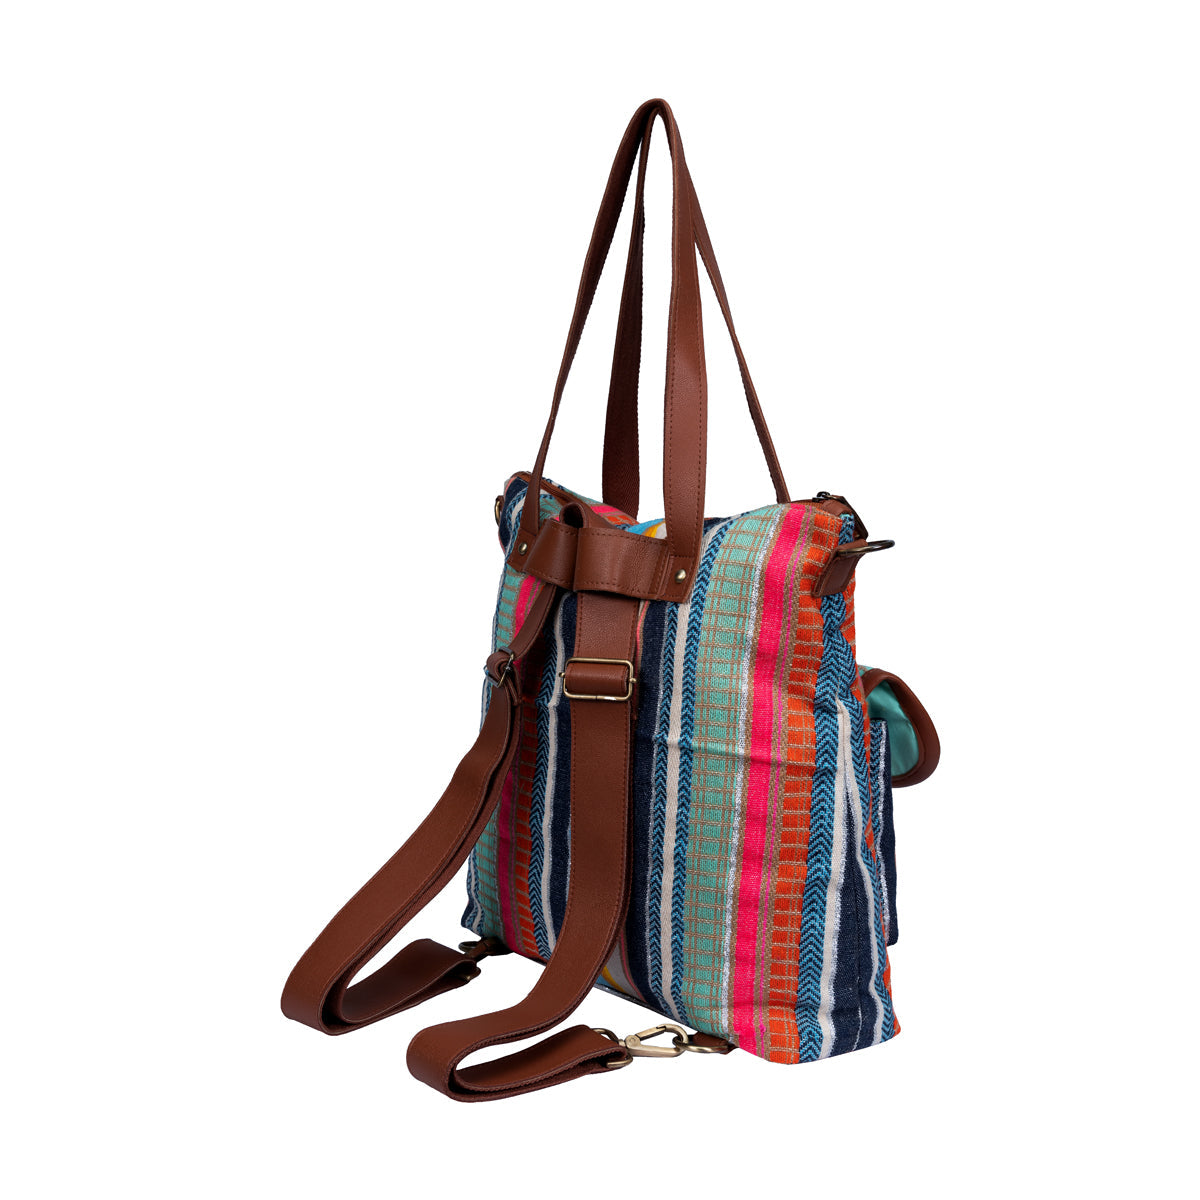 Multi Color Stripes Two Pocket Jacquard Bag